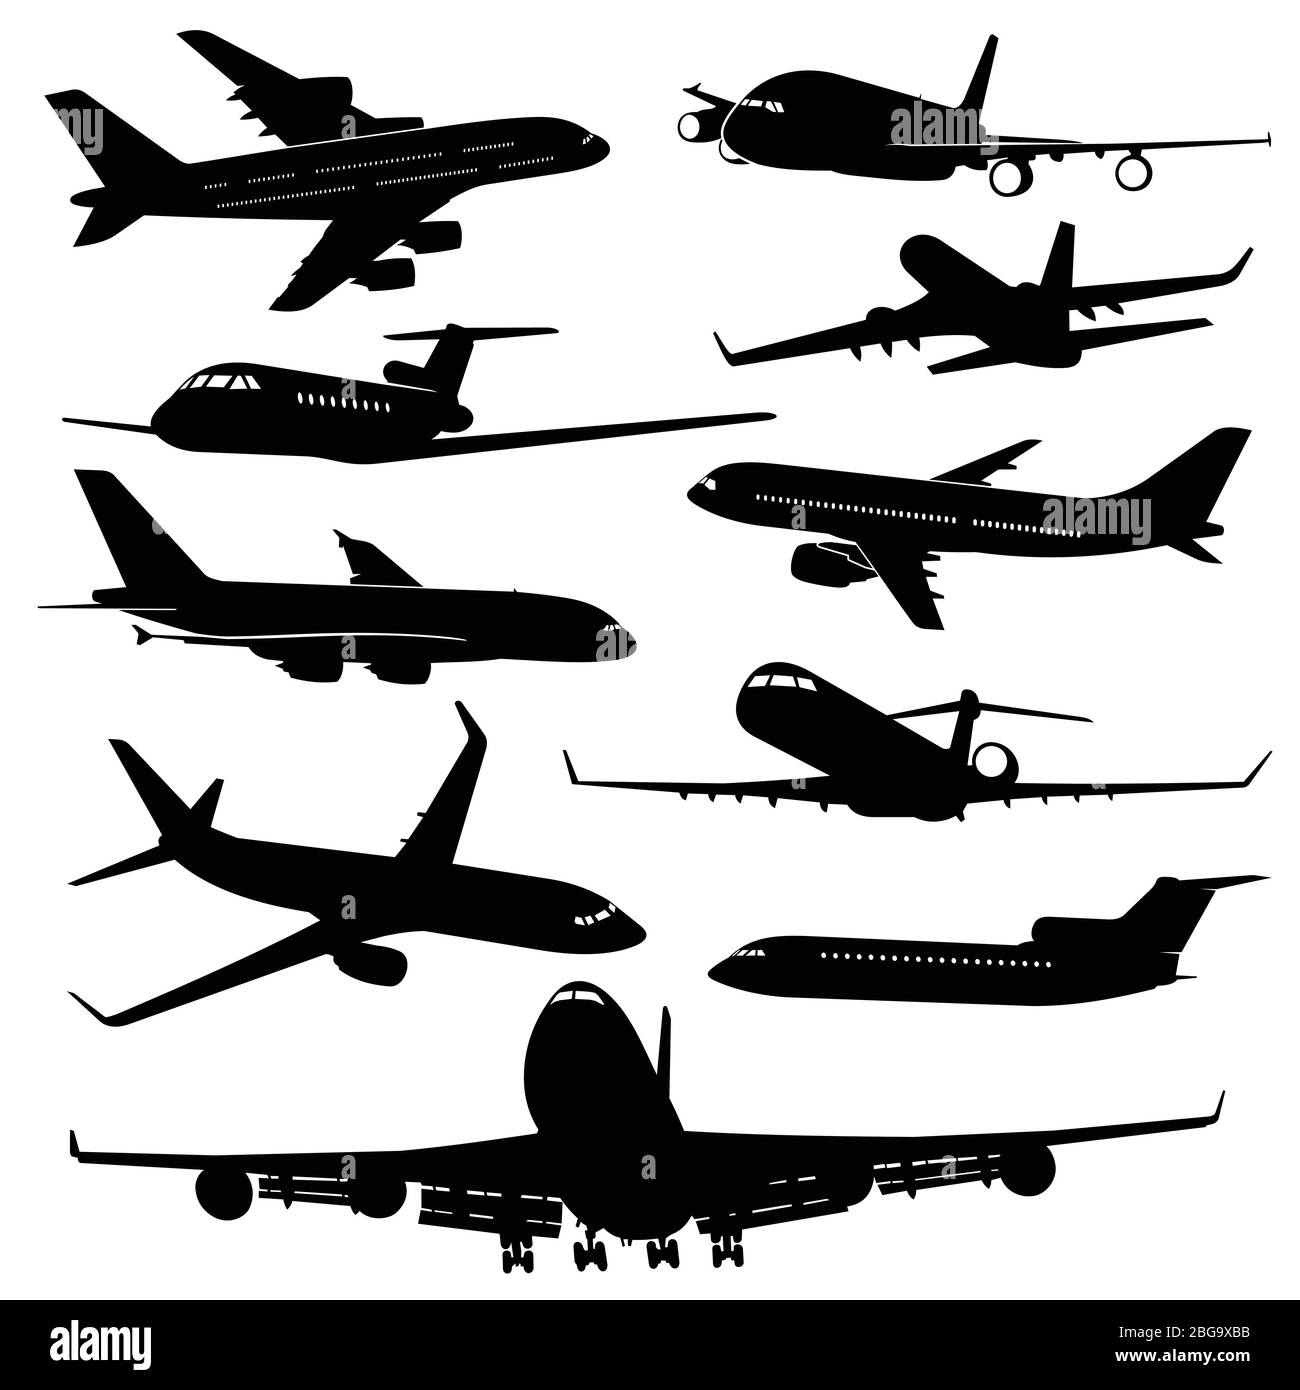 Avion aérien, silhouettes vectorielles de jet d'avion. Jeu d'illustrations de transport et de voyage noir monochrome Illustration de Vecteur